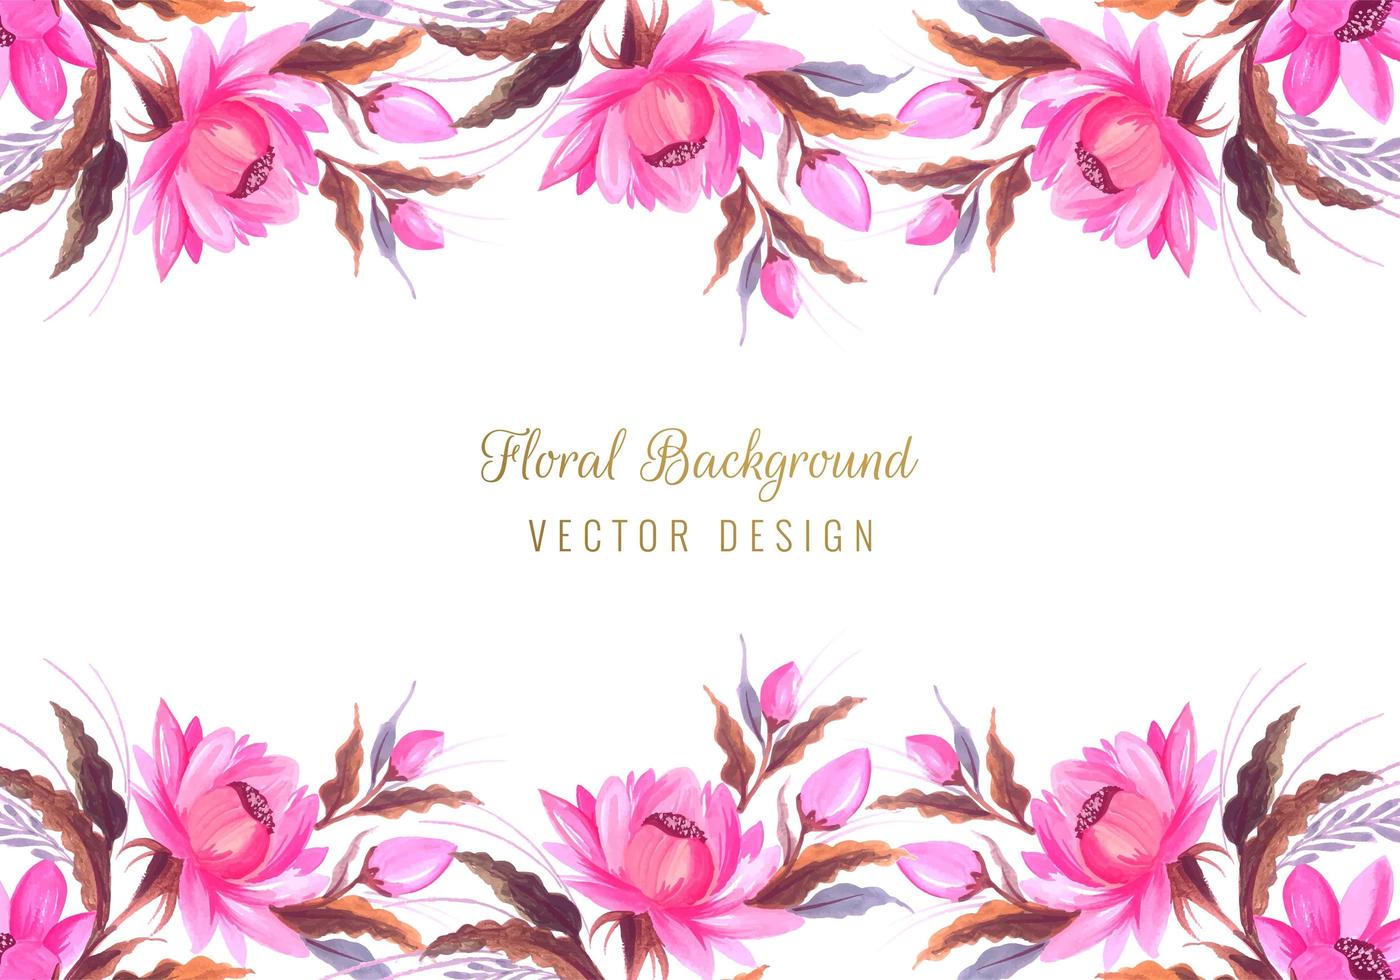 bordure florale bouquet vecteur